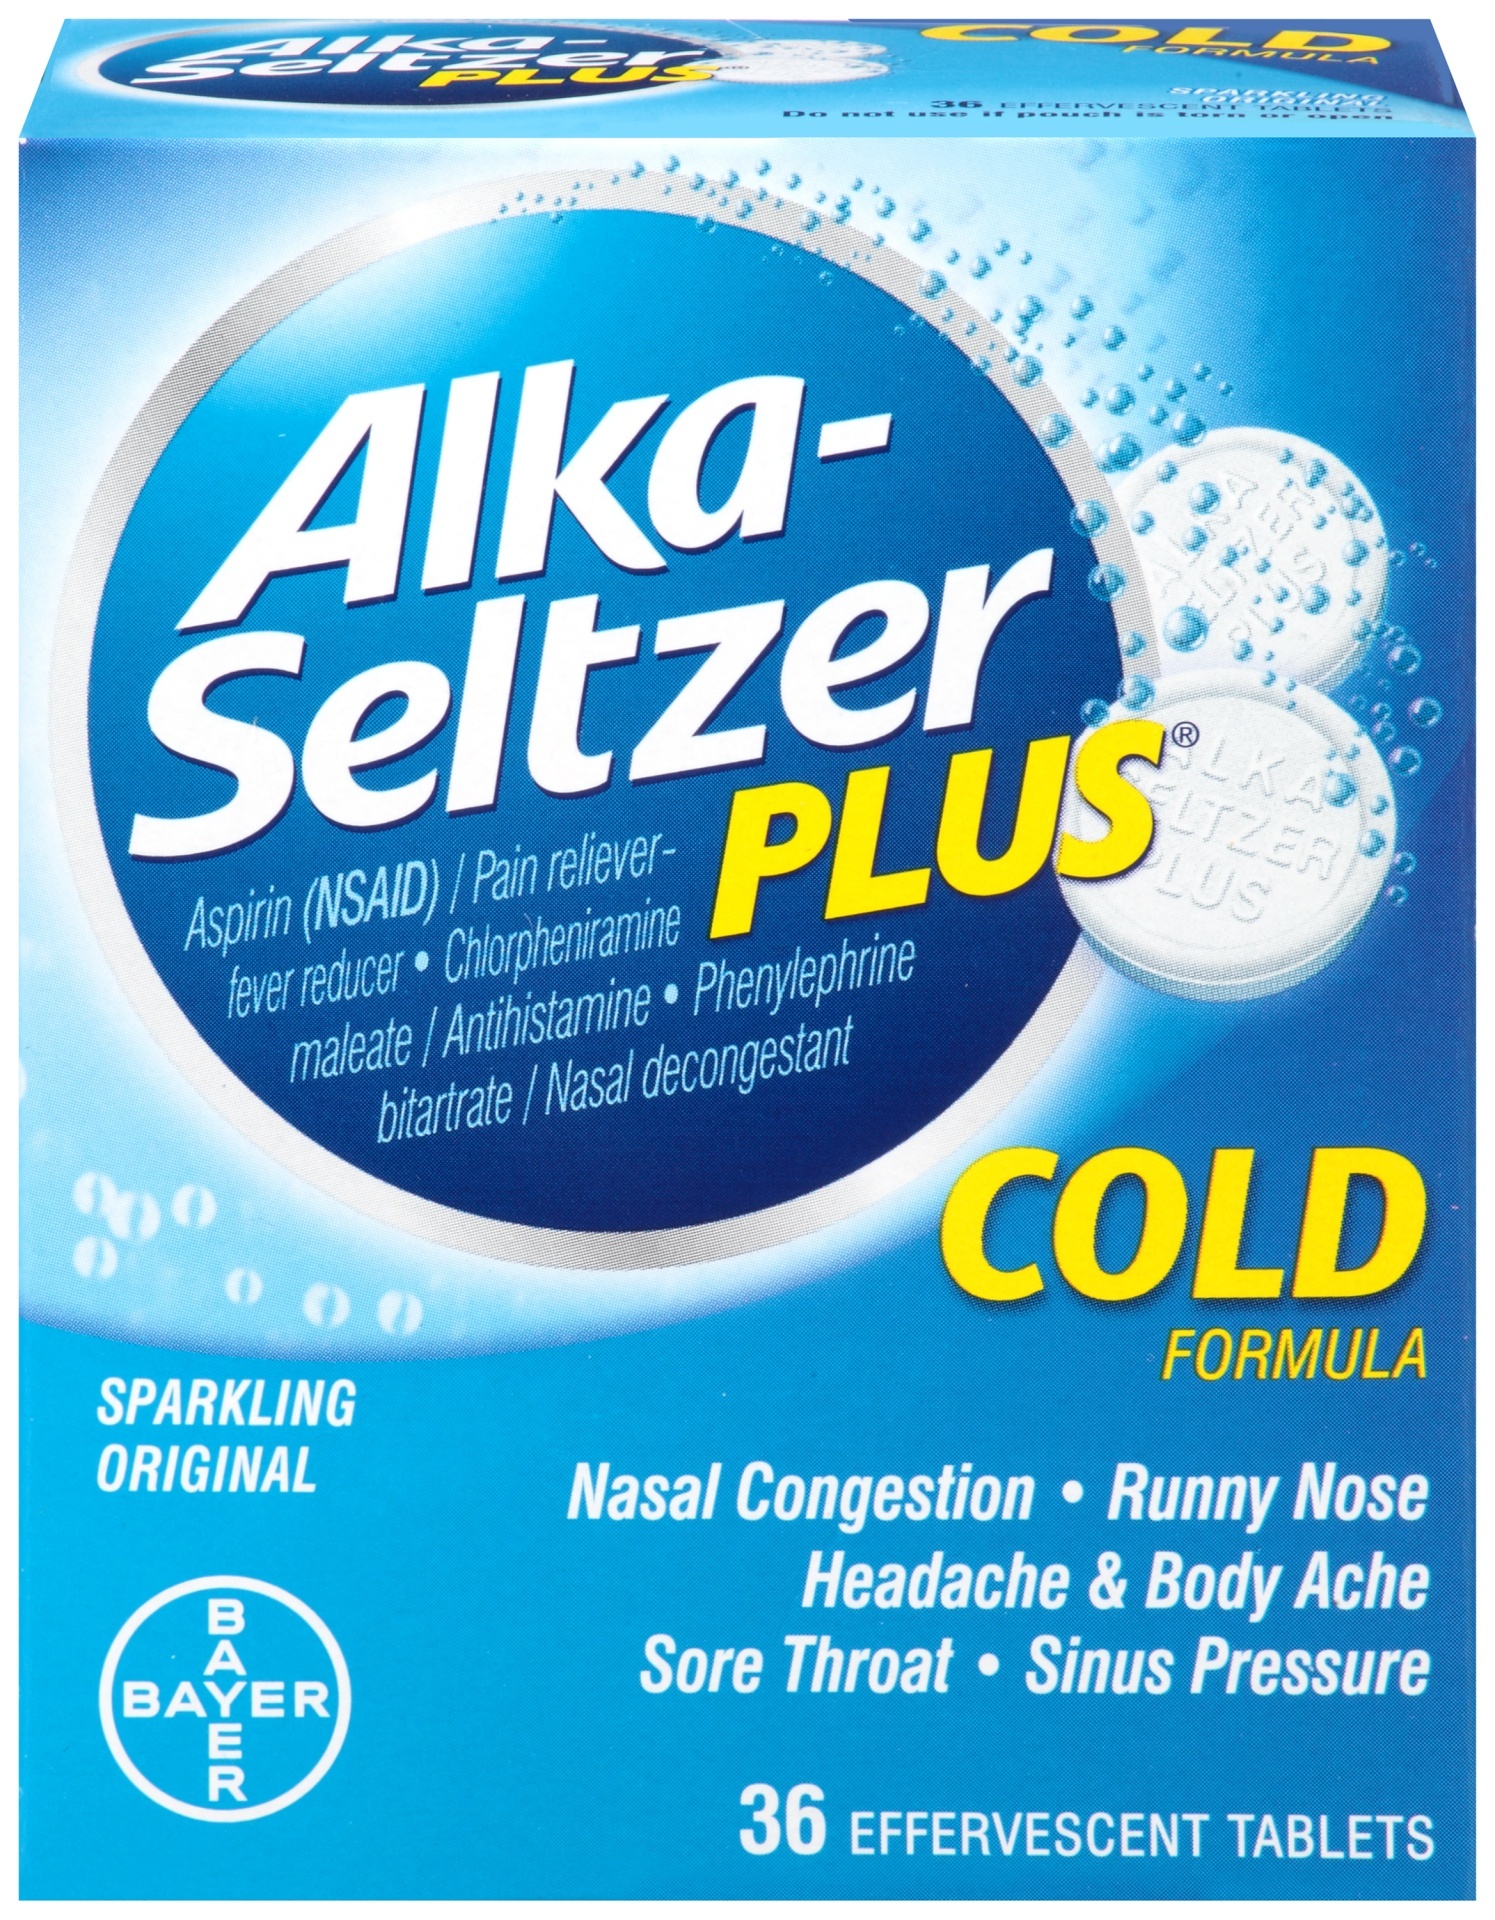 slide 1 of 1, Alka-Seltzer Plus Sparkling Original Cold Formula Effervescent Tablets Box, 36 ct